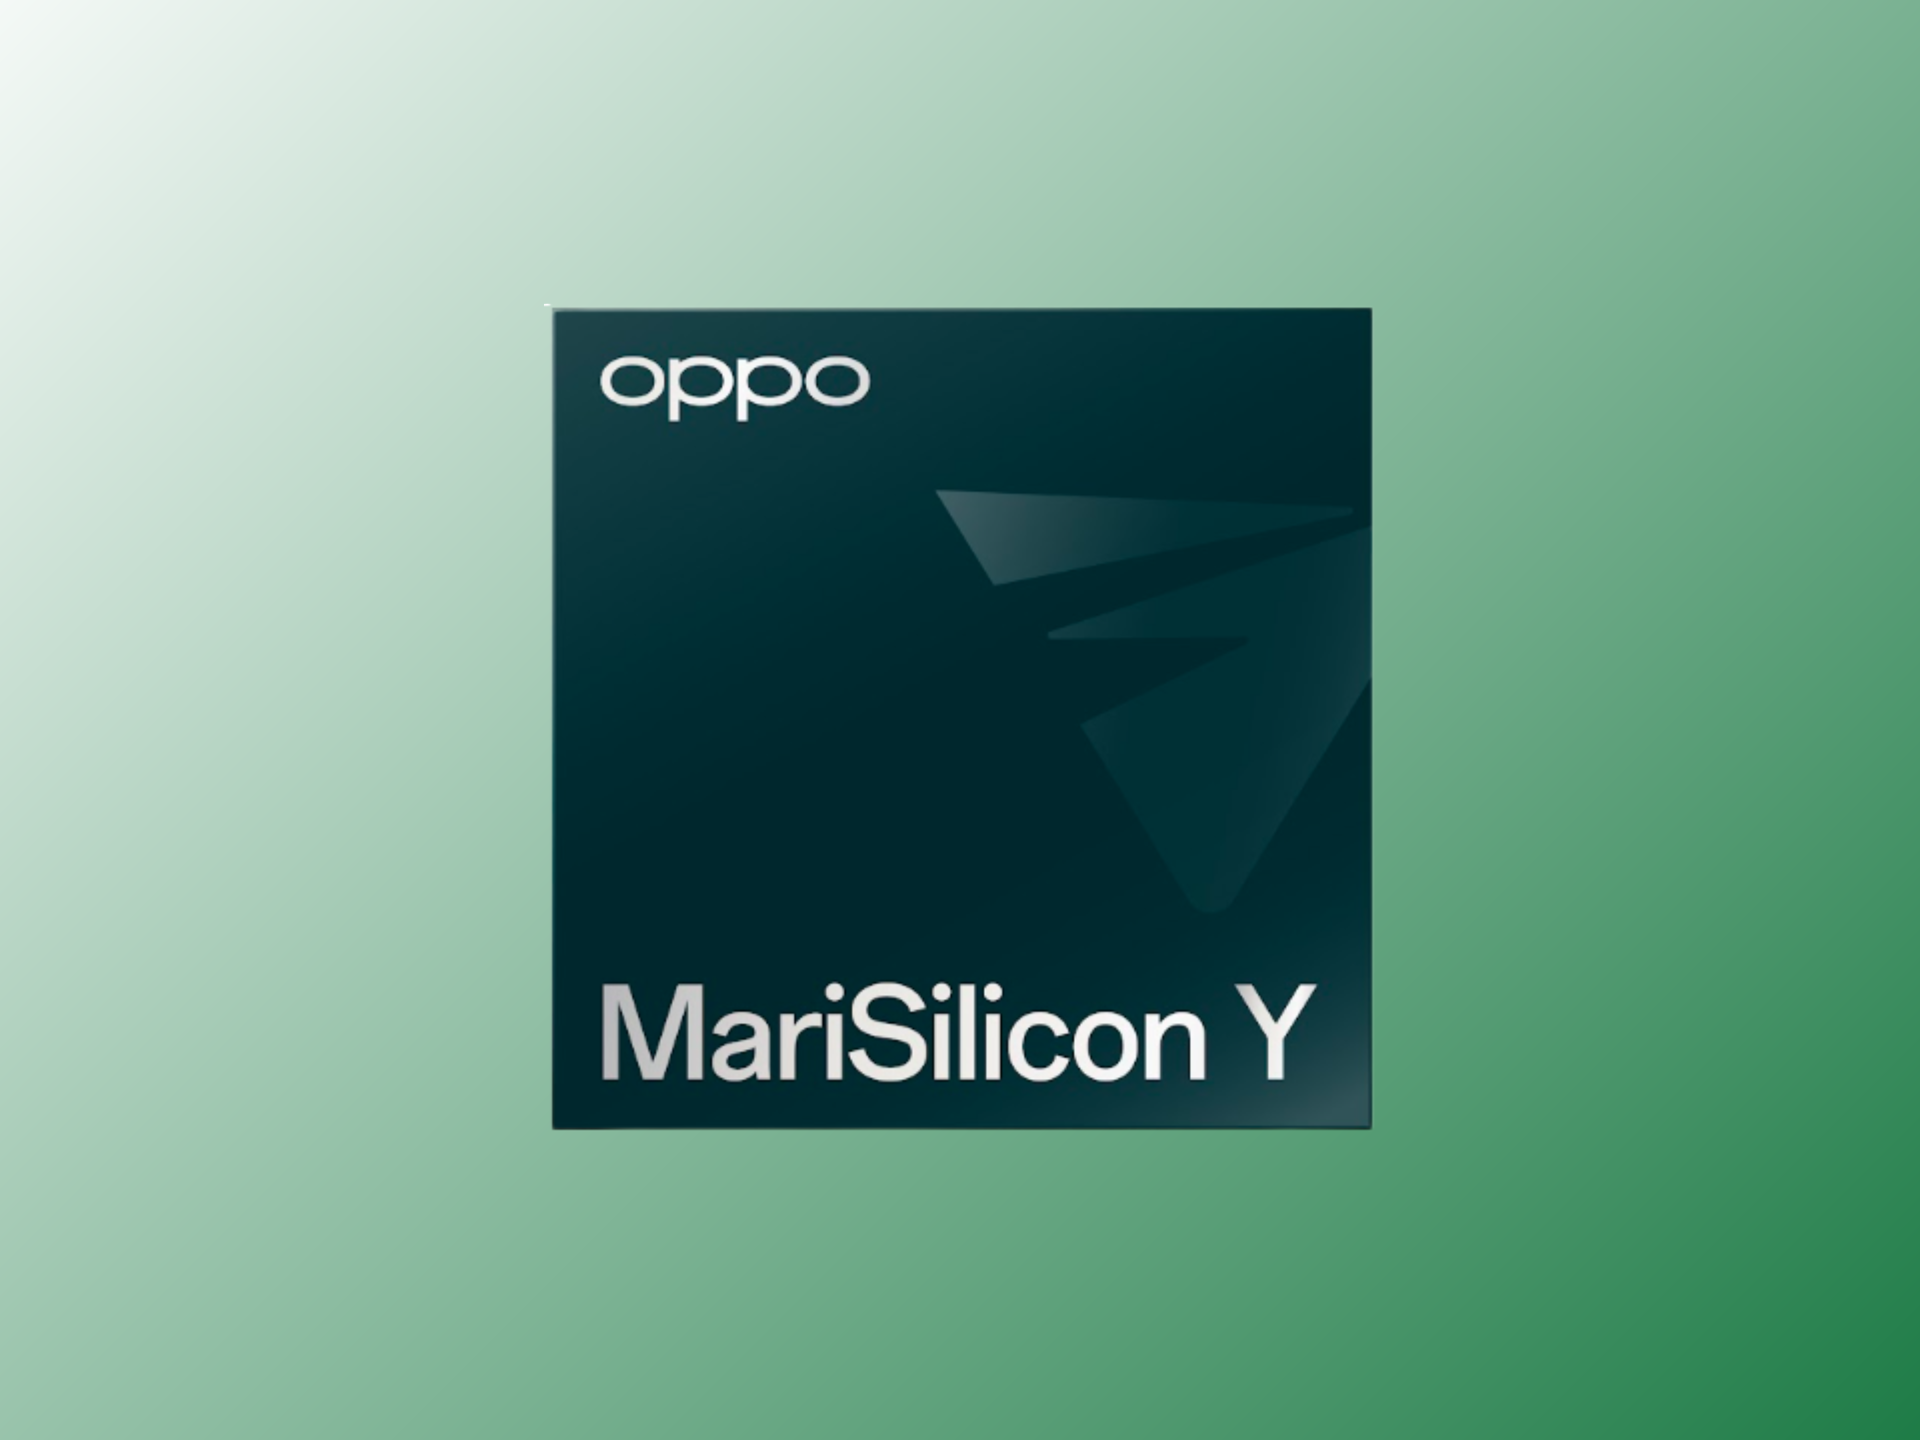 OPPO MariSilicon Y SoC chip